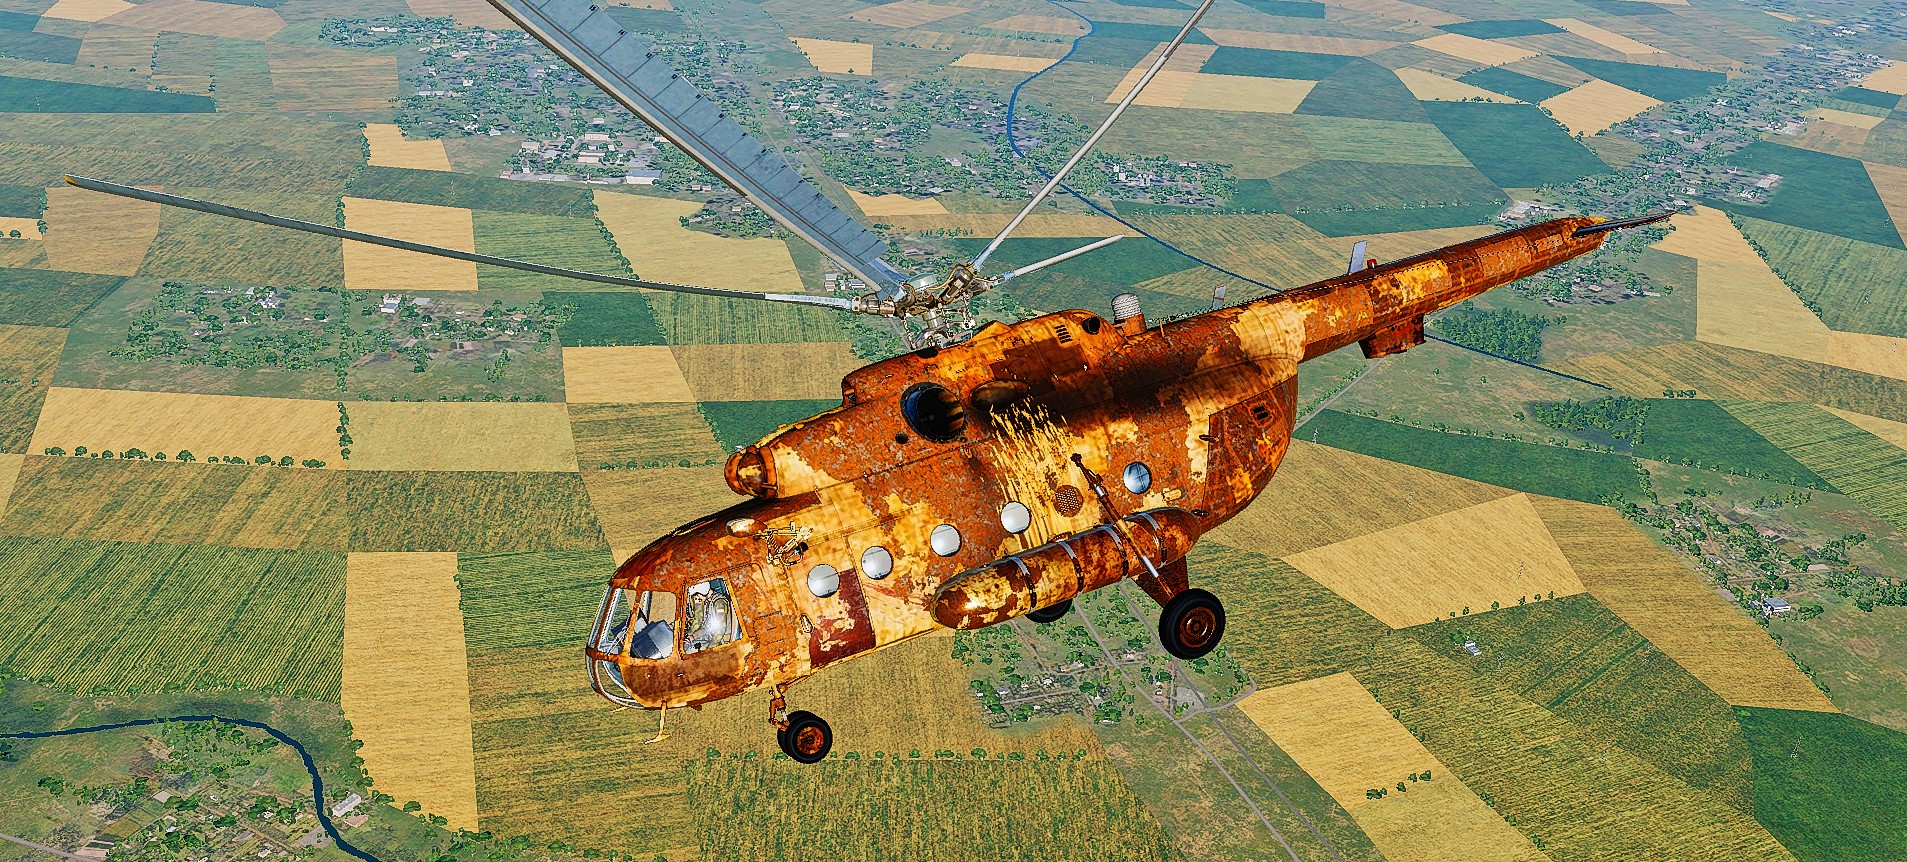 Rusty and Crusty Mi-8